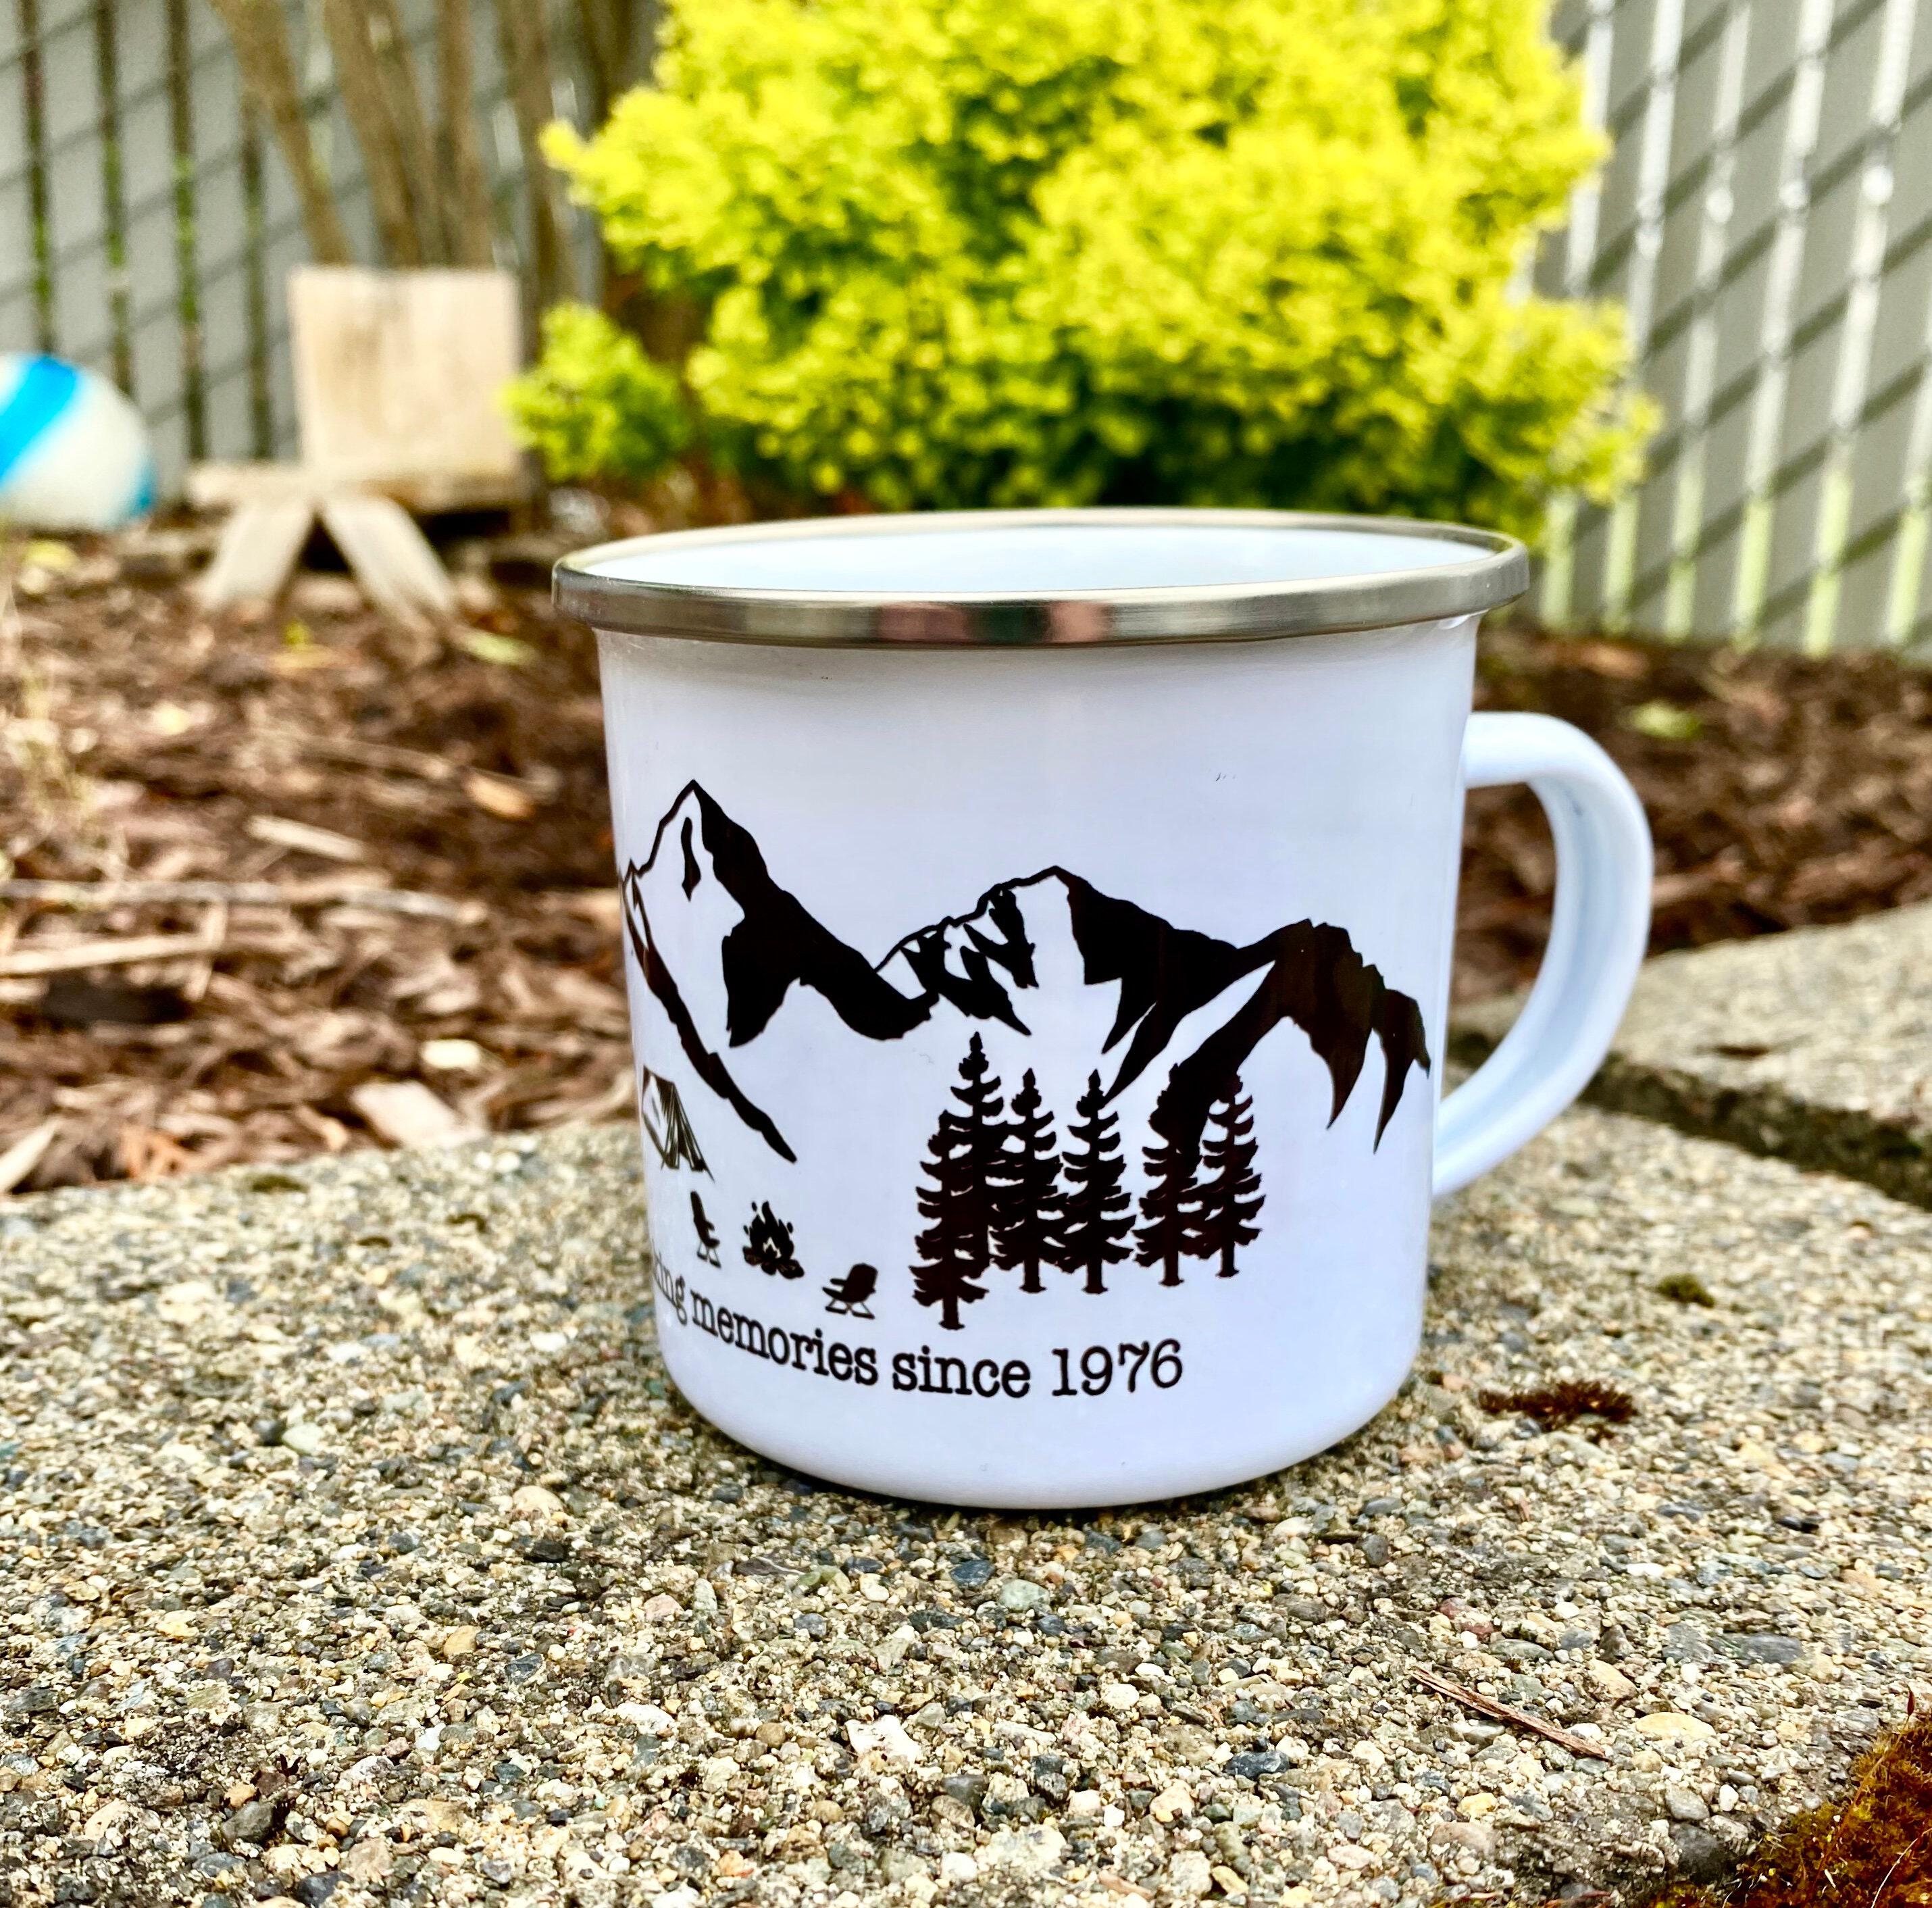 Camp Life Campfire Mug, Camping Mug, Outdoor Mugs, Nature Mug